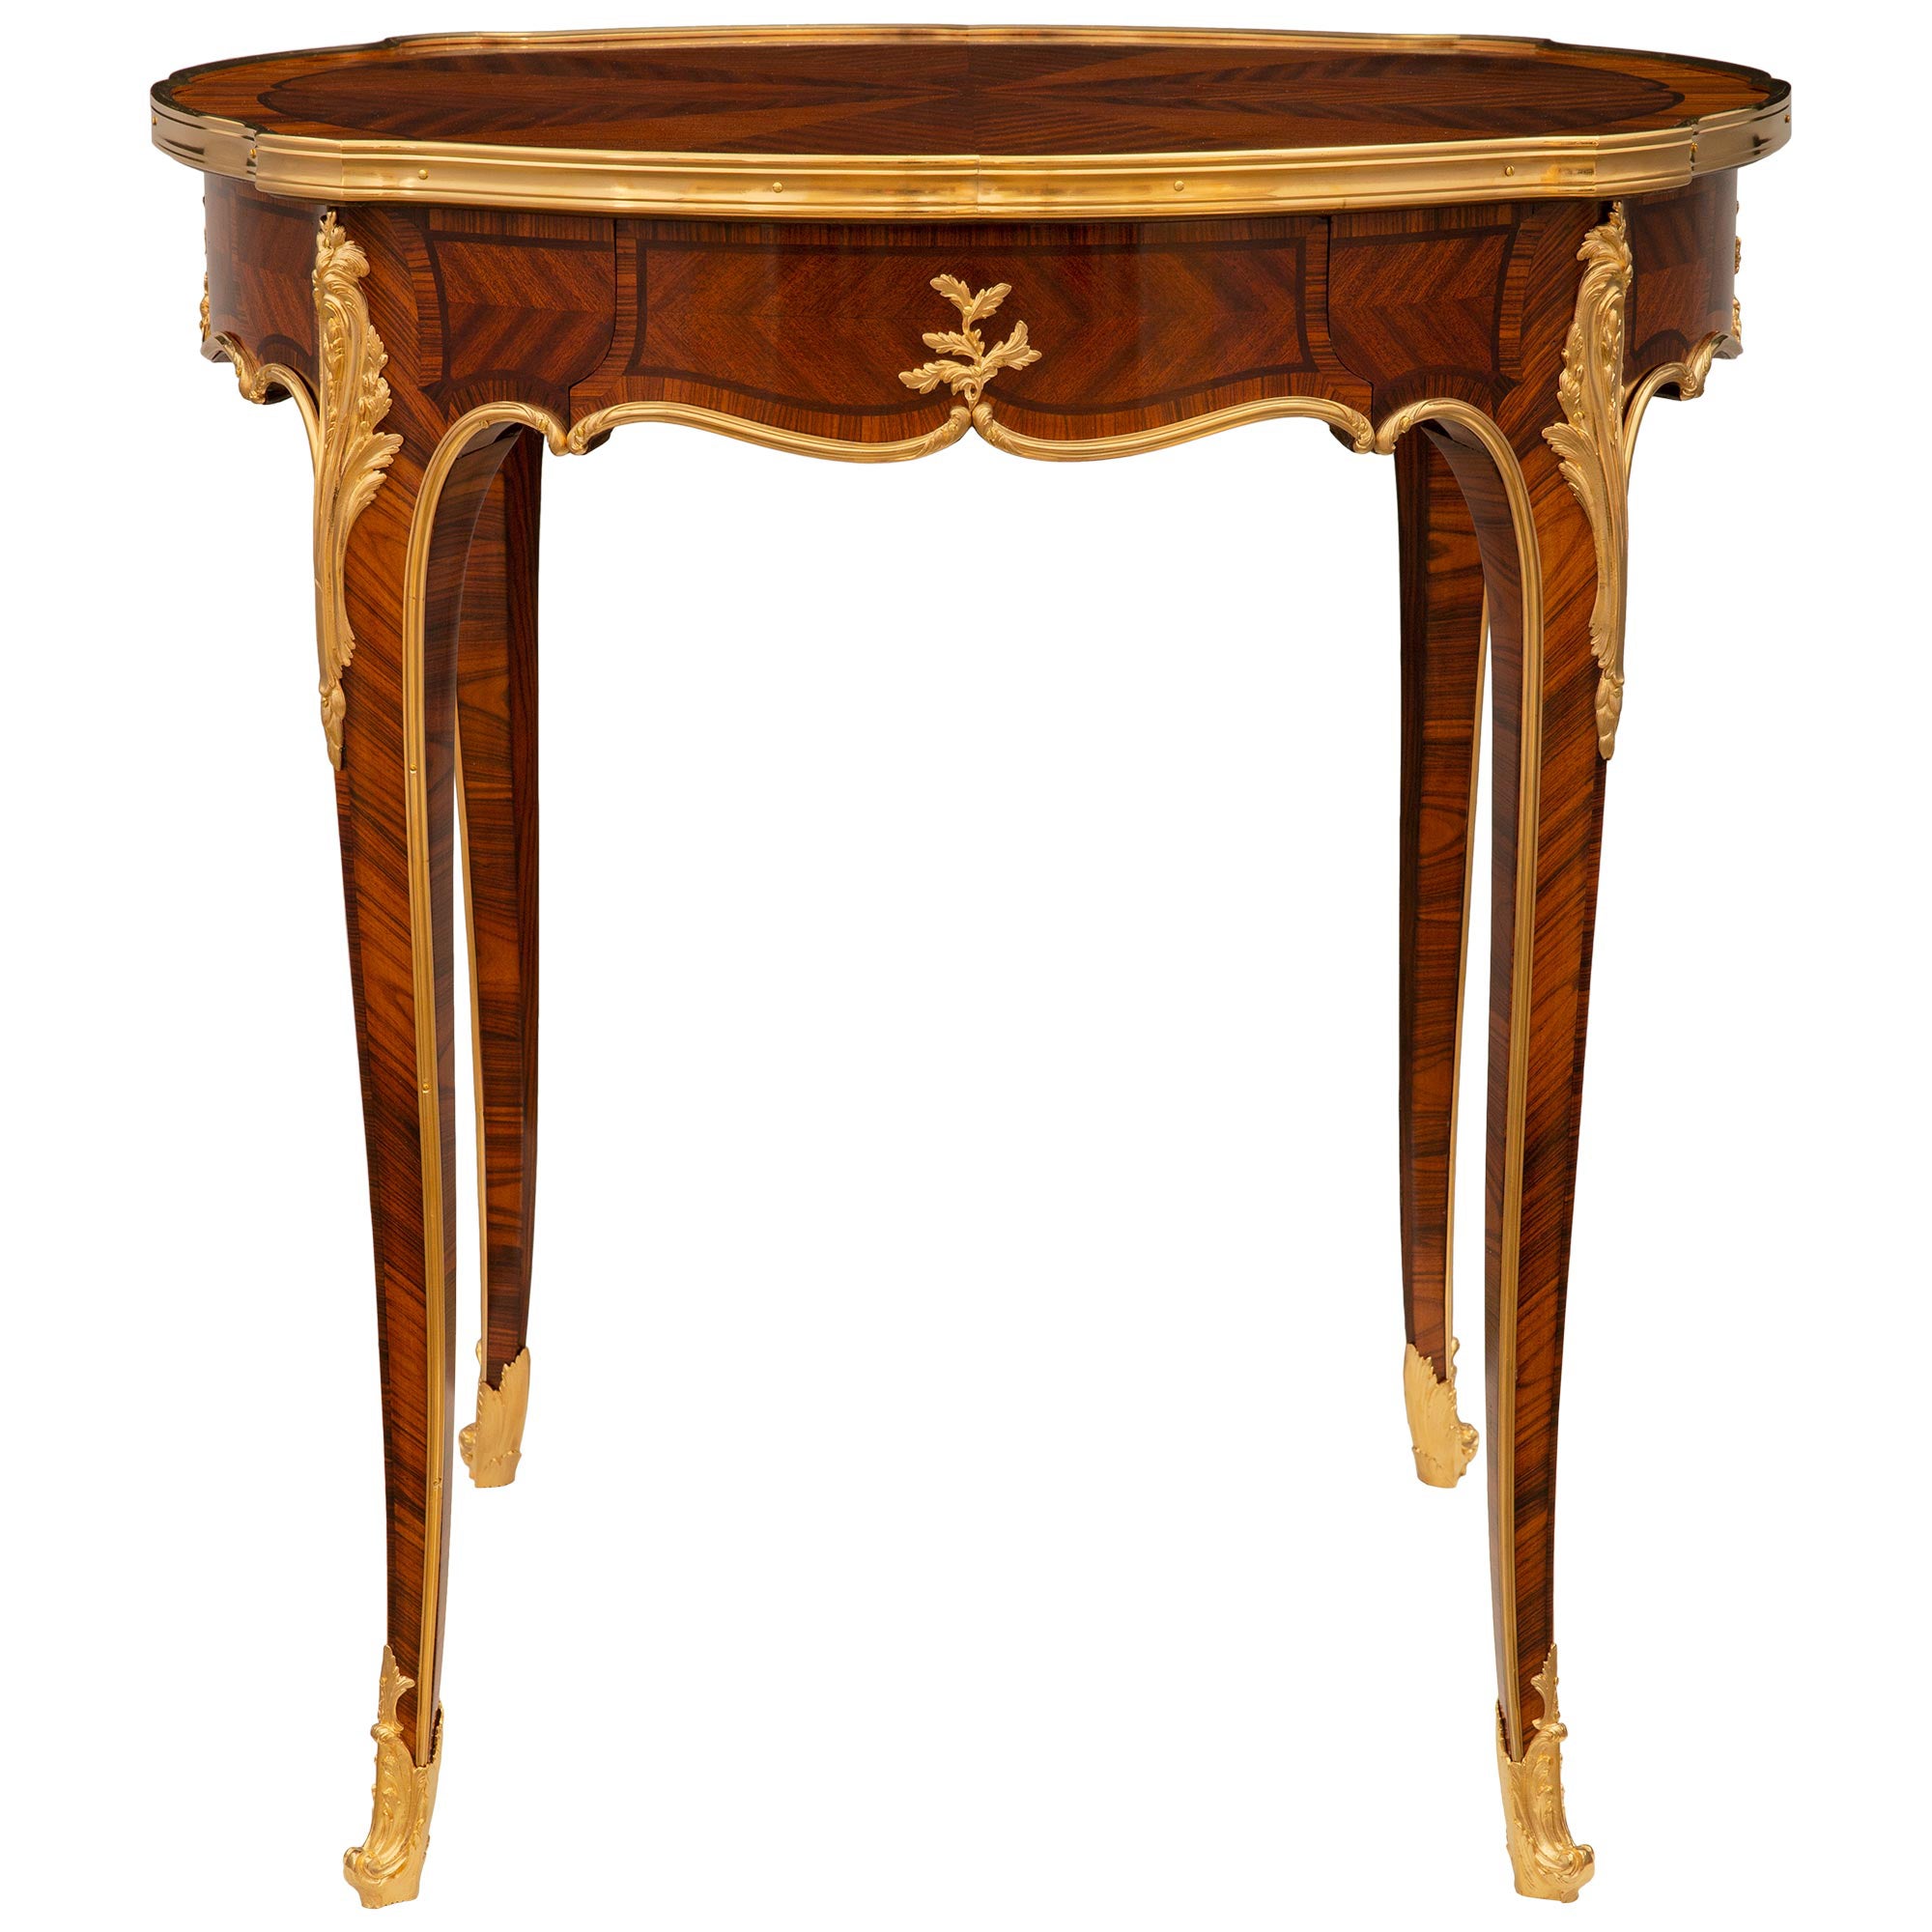 Table d'appoint en bois de tulipier, bois de roi et bronze doré de style Louis XV du XIXe siècle